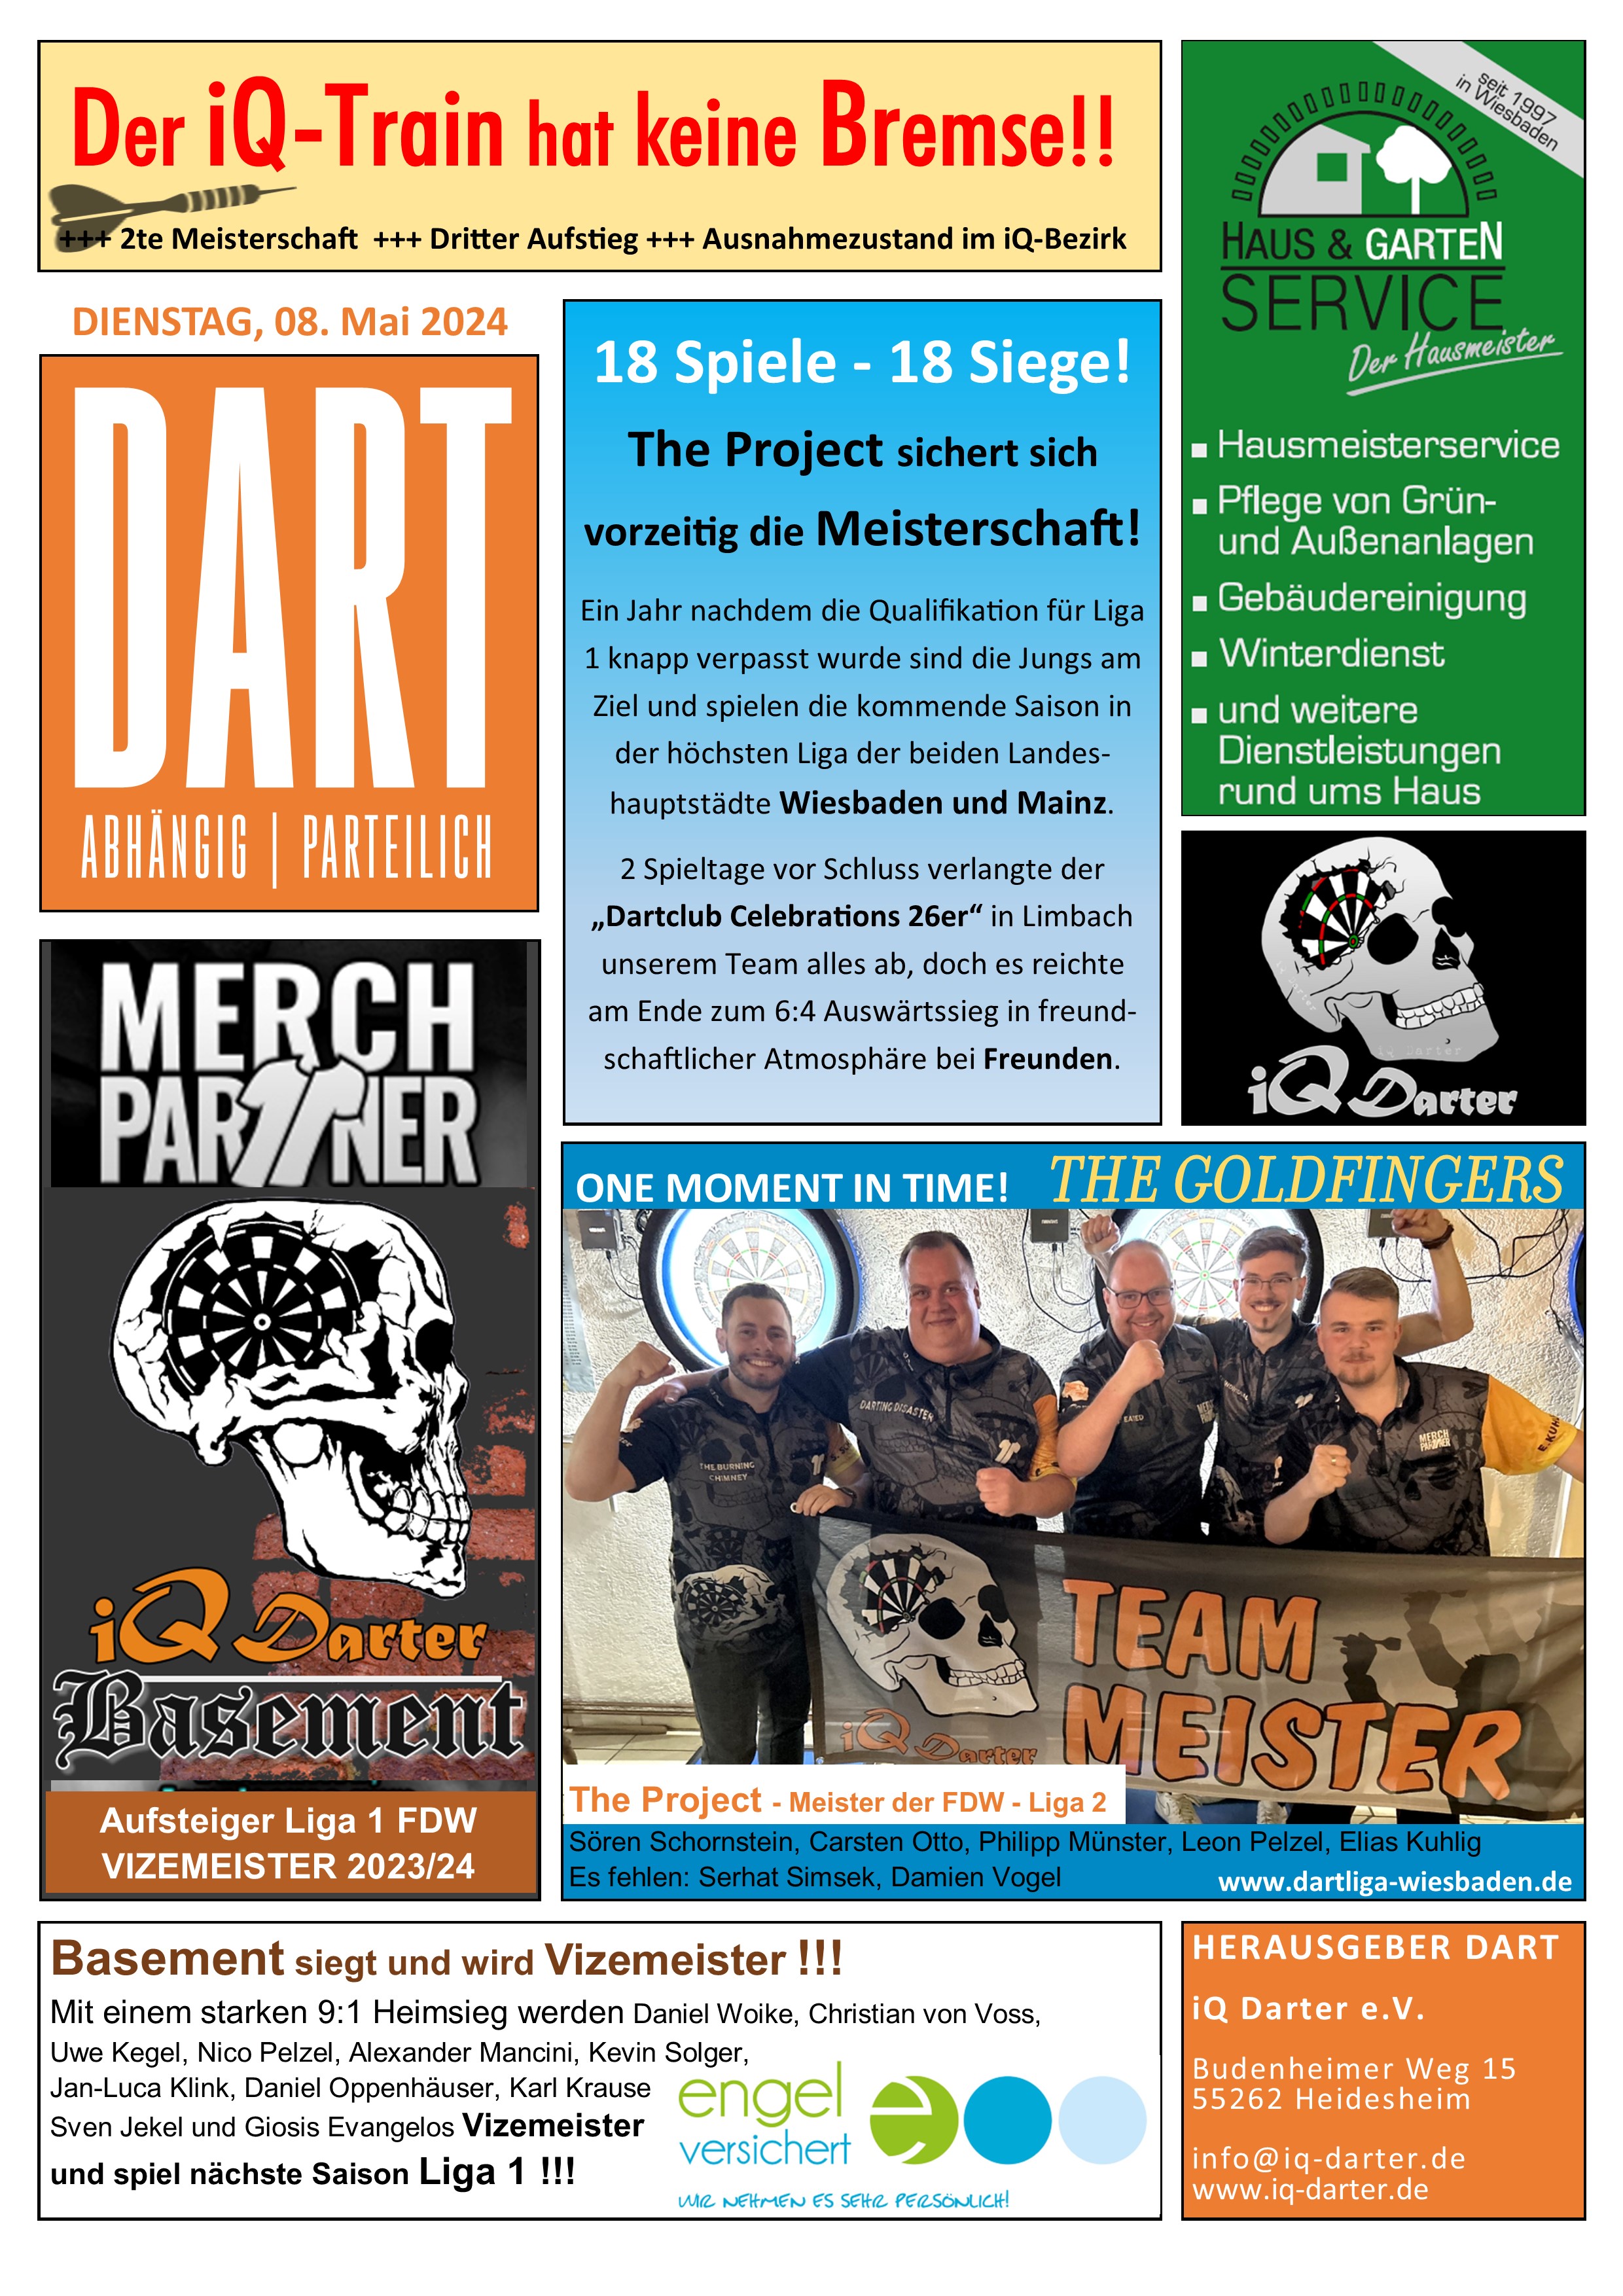 DART - Die Dart-Zeitschrift der iQ Darter - Ausgabe 4